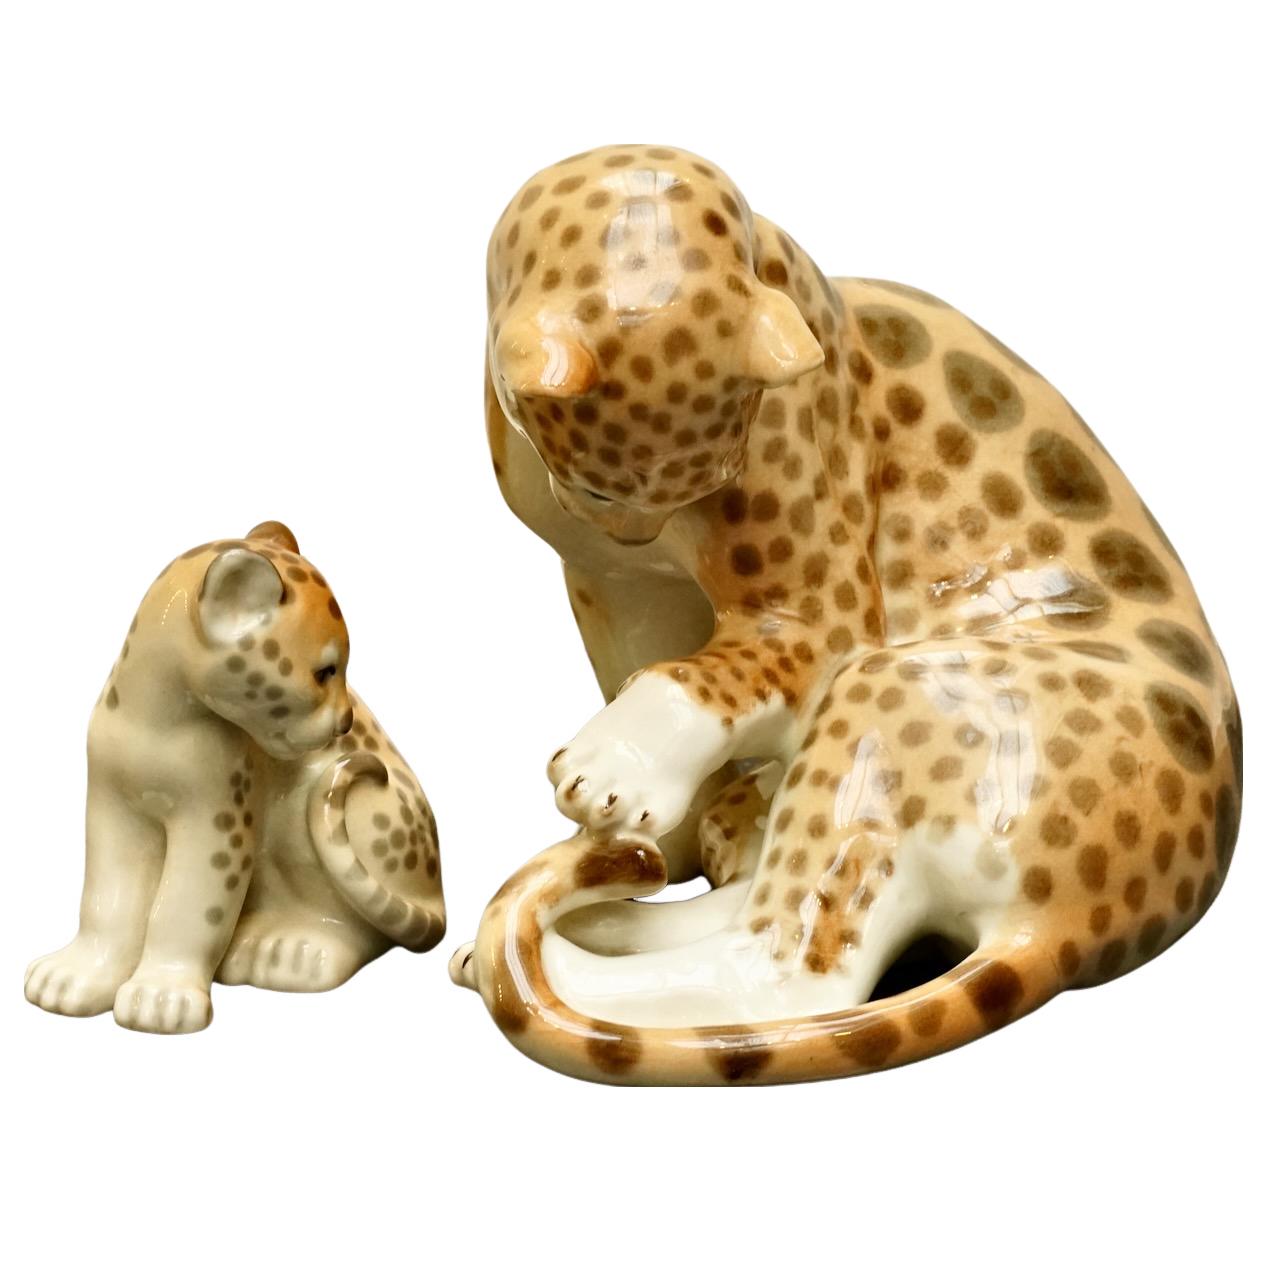 
Merveilleuses figurines en porcelaine de Lomonosov représentant une mère guépard et son petit. Peint à la main, fabriqué en Russie.

La mère guépard mesure à la base 18,5 cm / 7,28 par la largeur maximale 14,5 cm / 5,7 pouces, et la hauteur 17 cm /